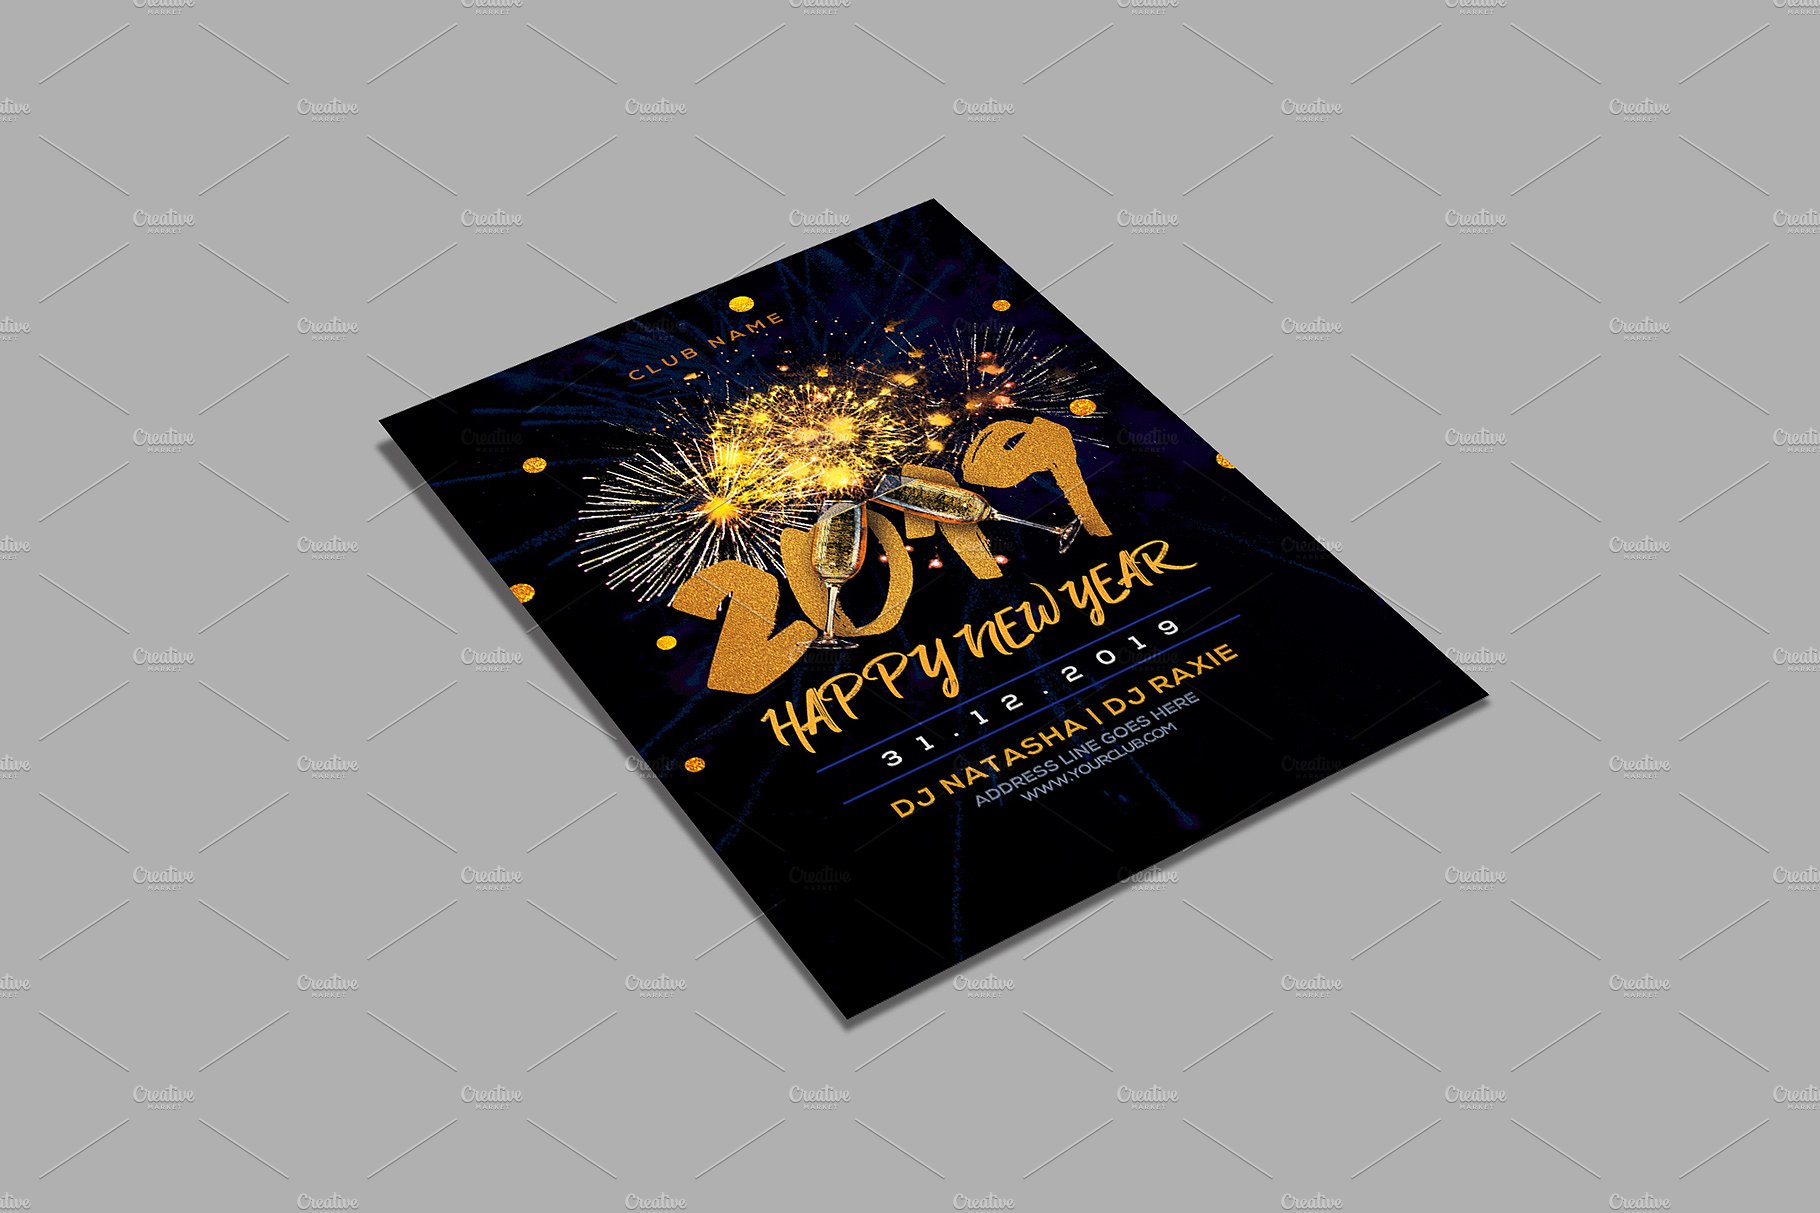 2019新年派对海报模板下载 New Year Party Flyer [psd]插图(3)